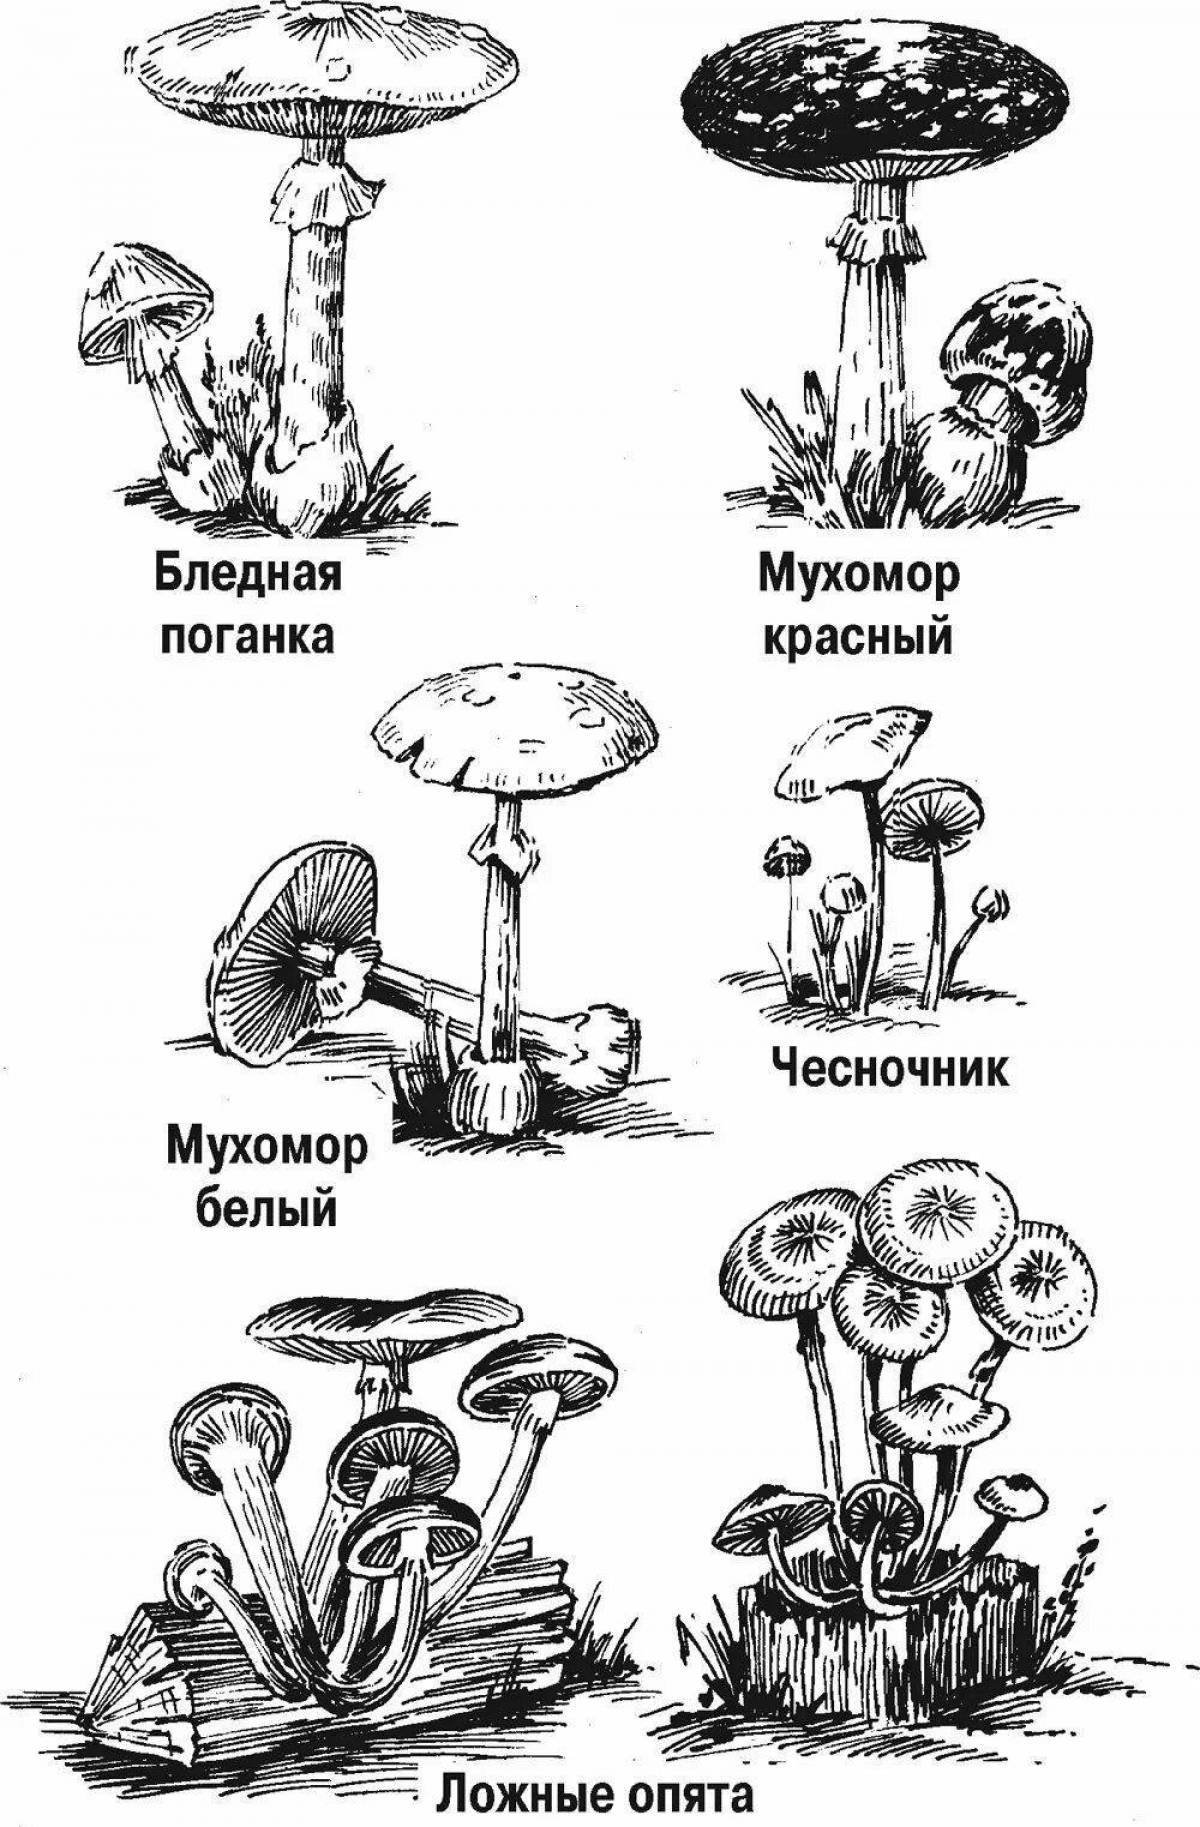 Colorful edible mushrooms for kids